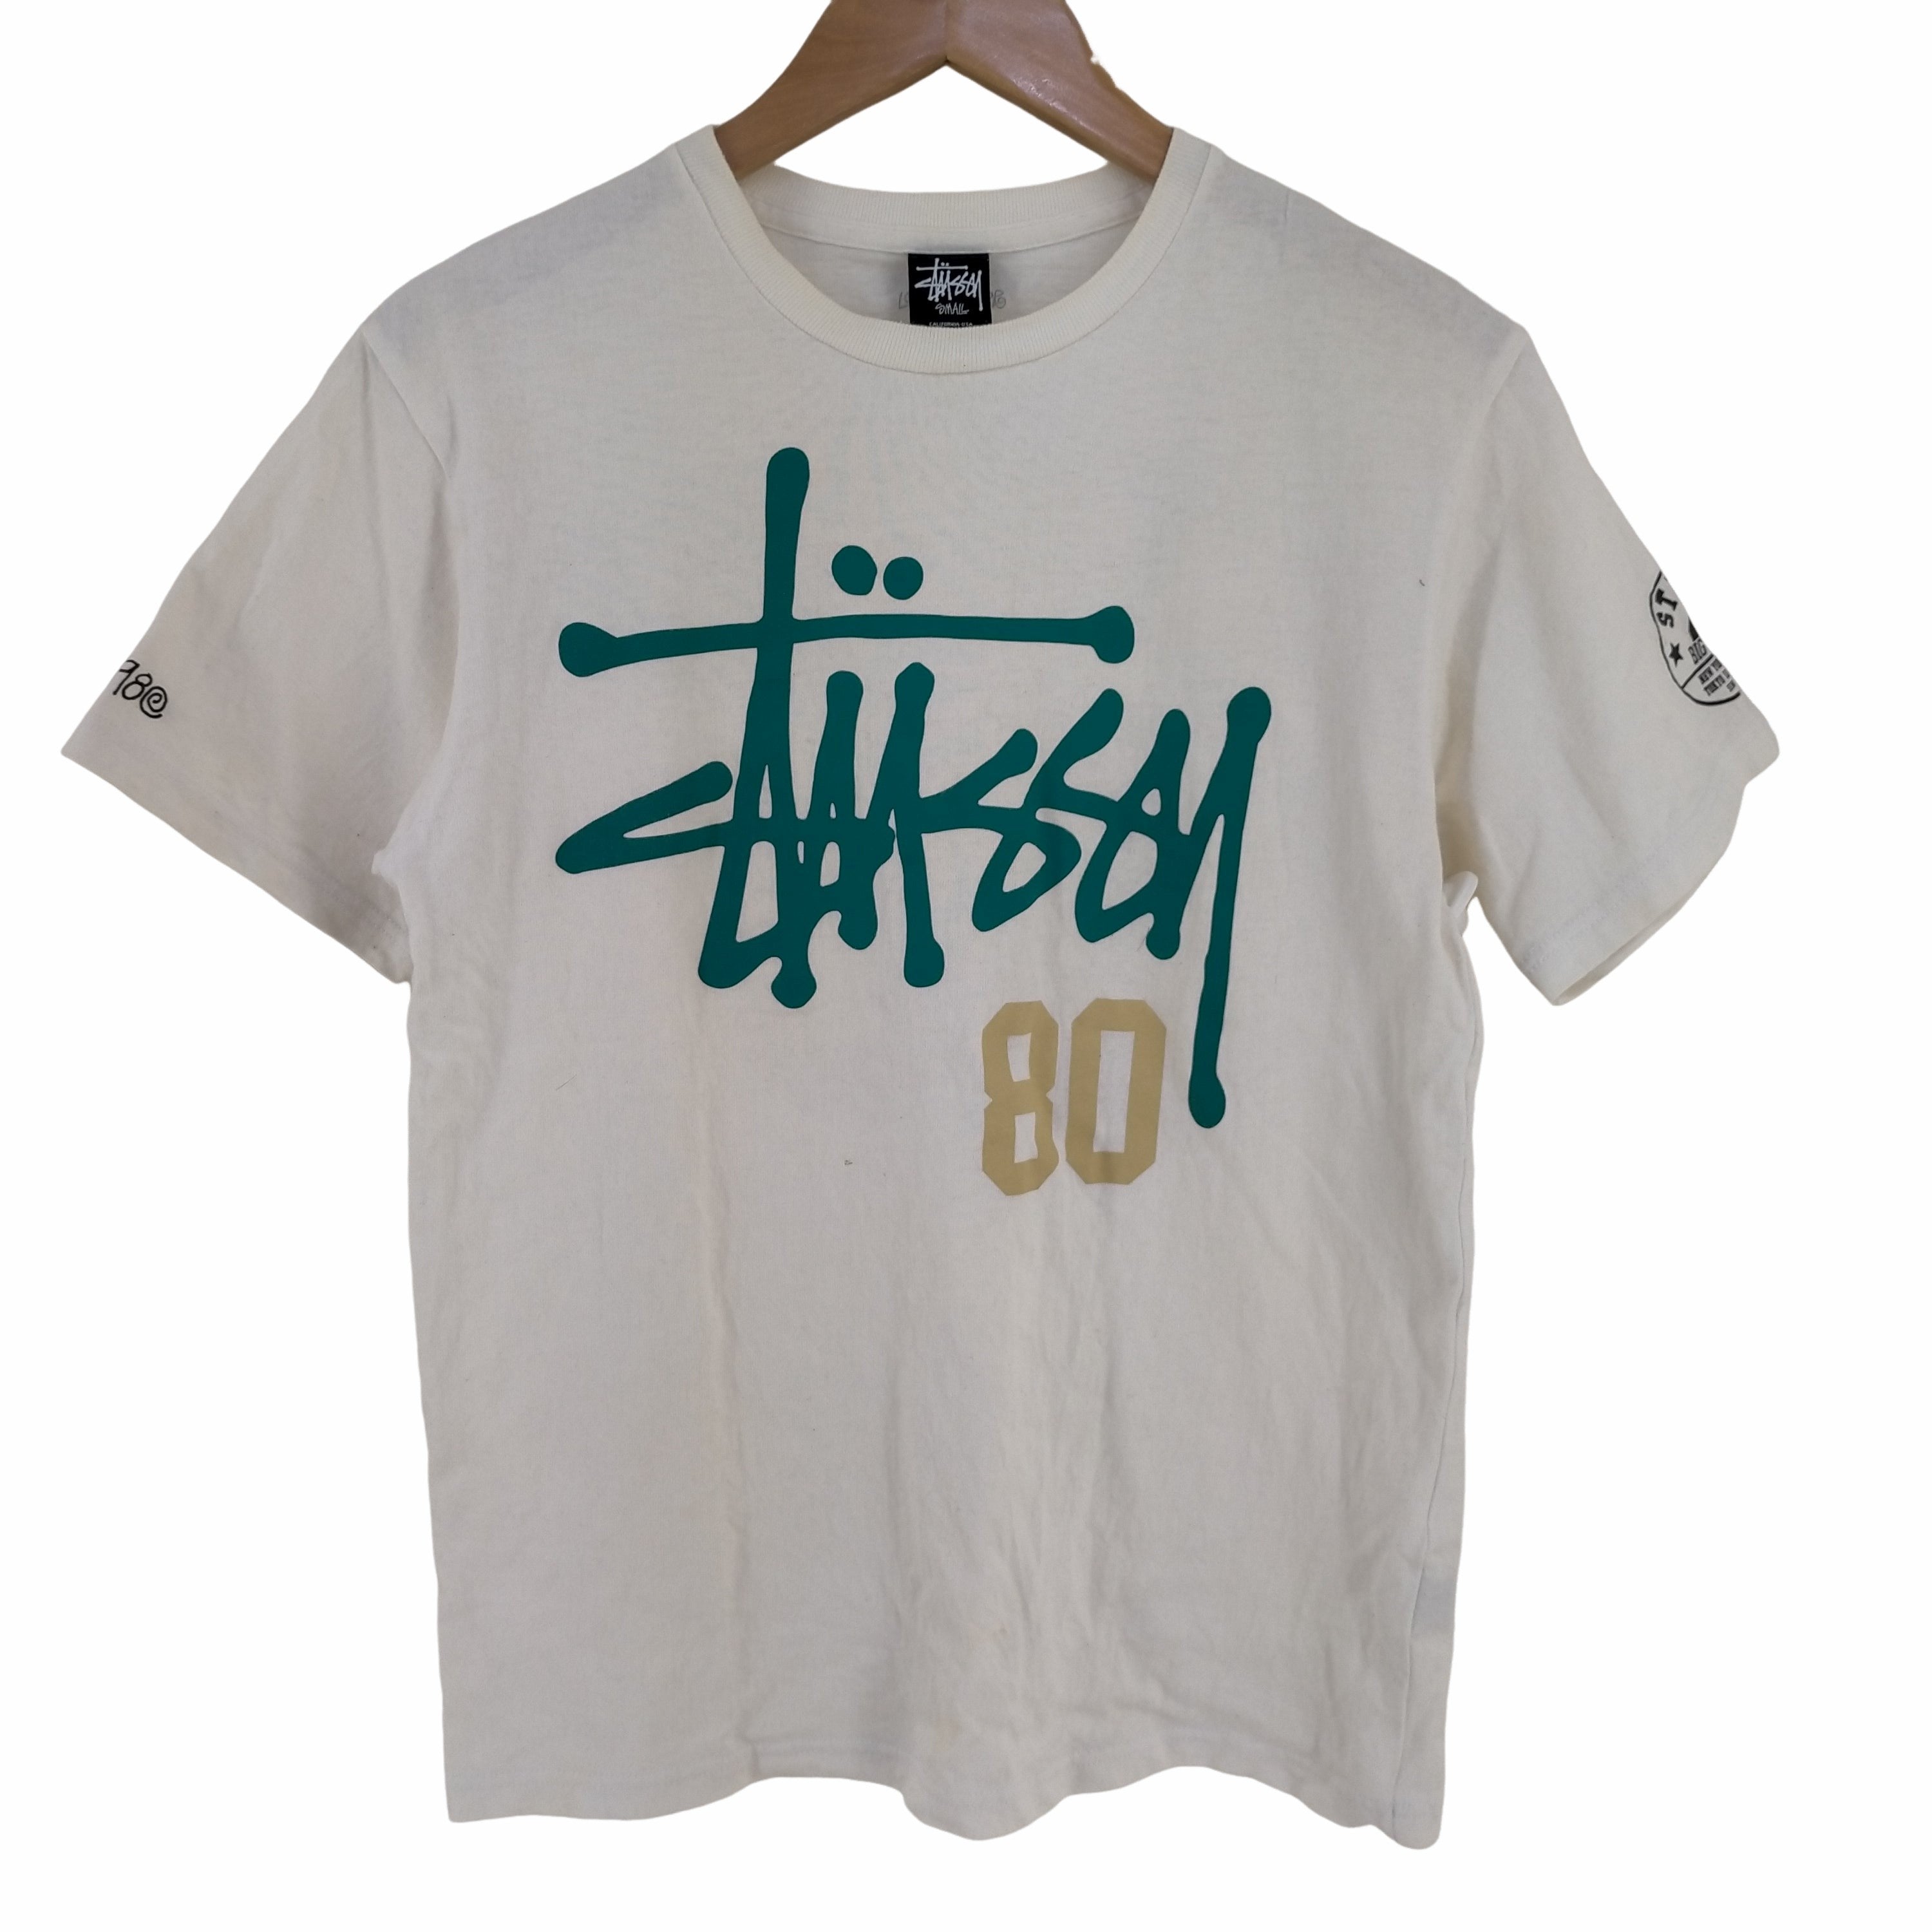 ステューシー Stussy ショーンフォントロゴ 80 背番号Tシャツ メンズ